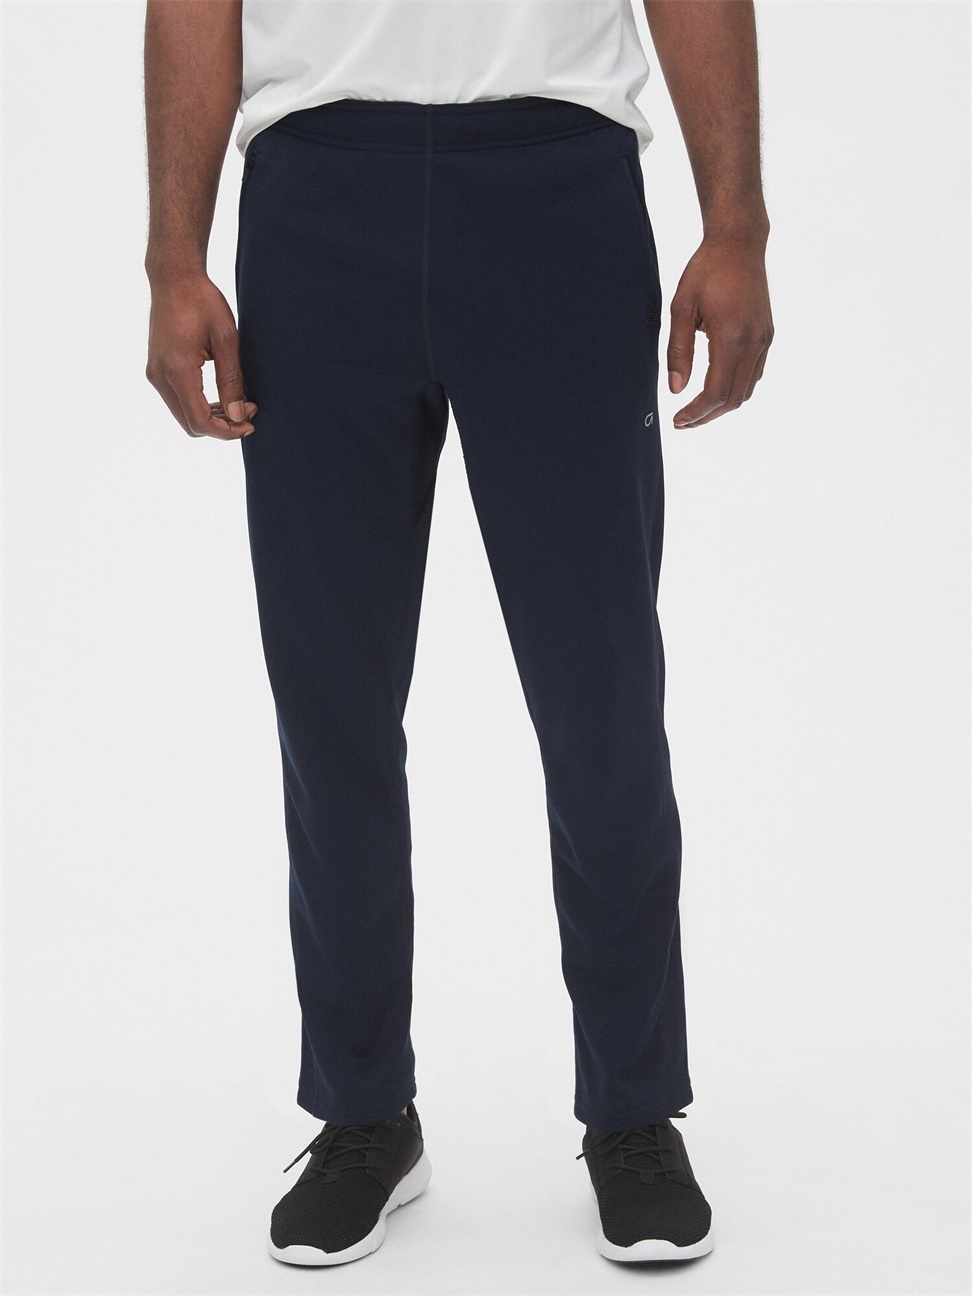 男裝|寬鬆舒適運動褲 Gap Fit運動系列-藏青色